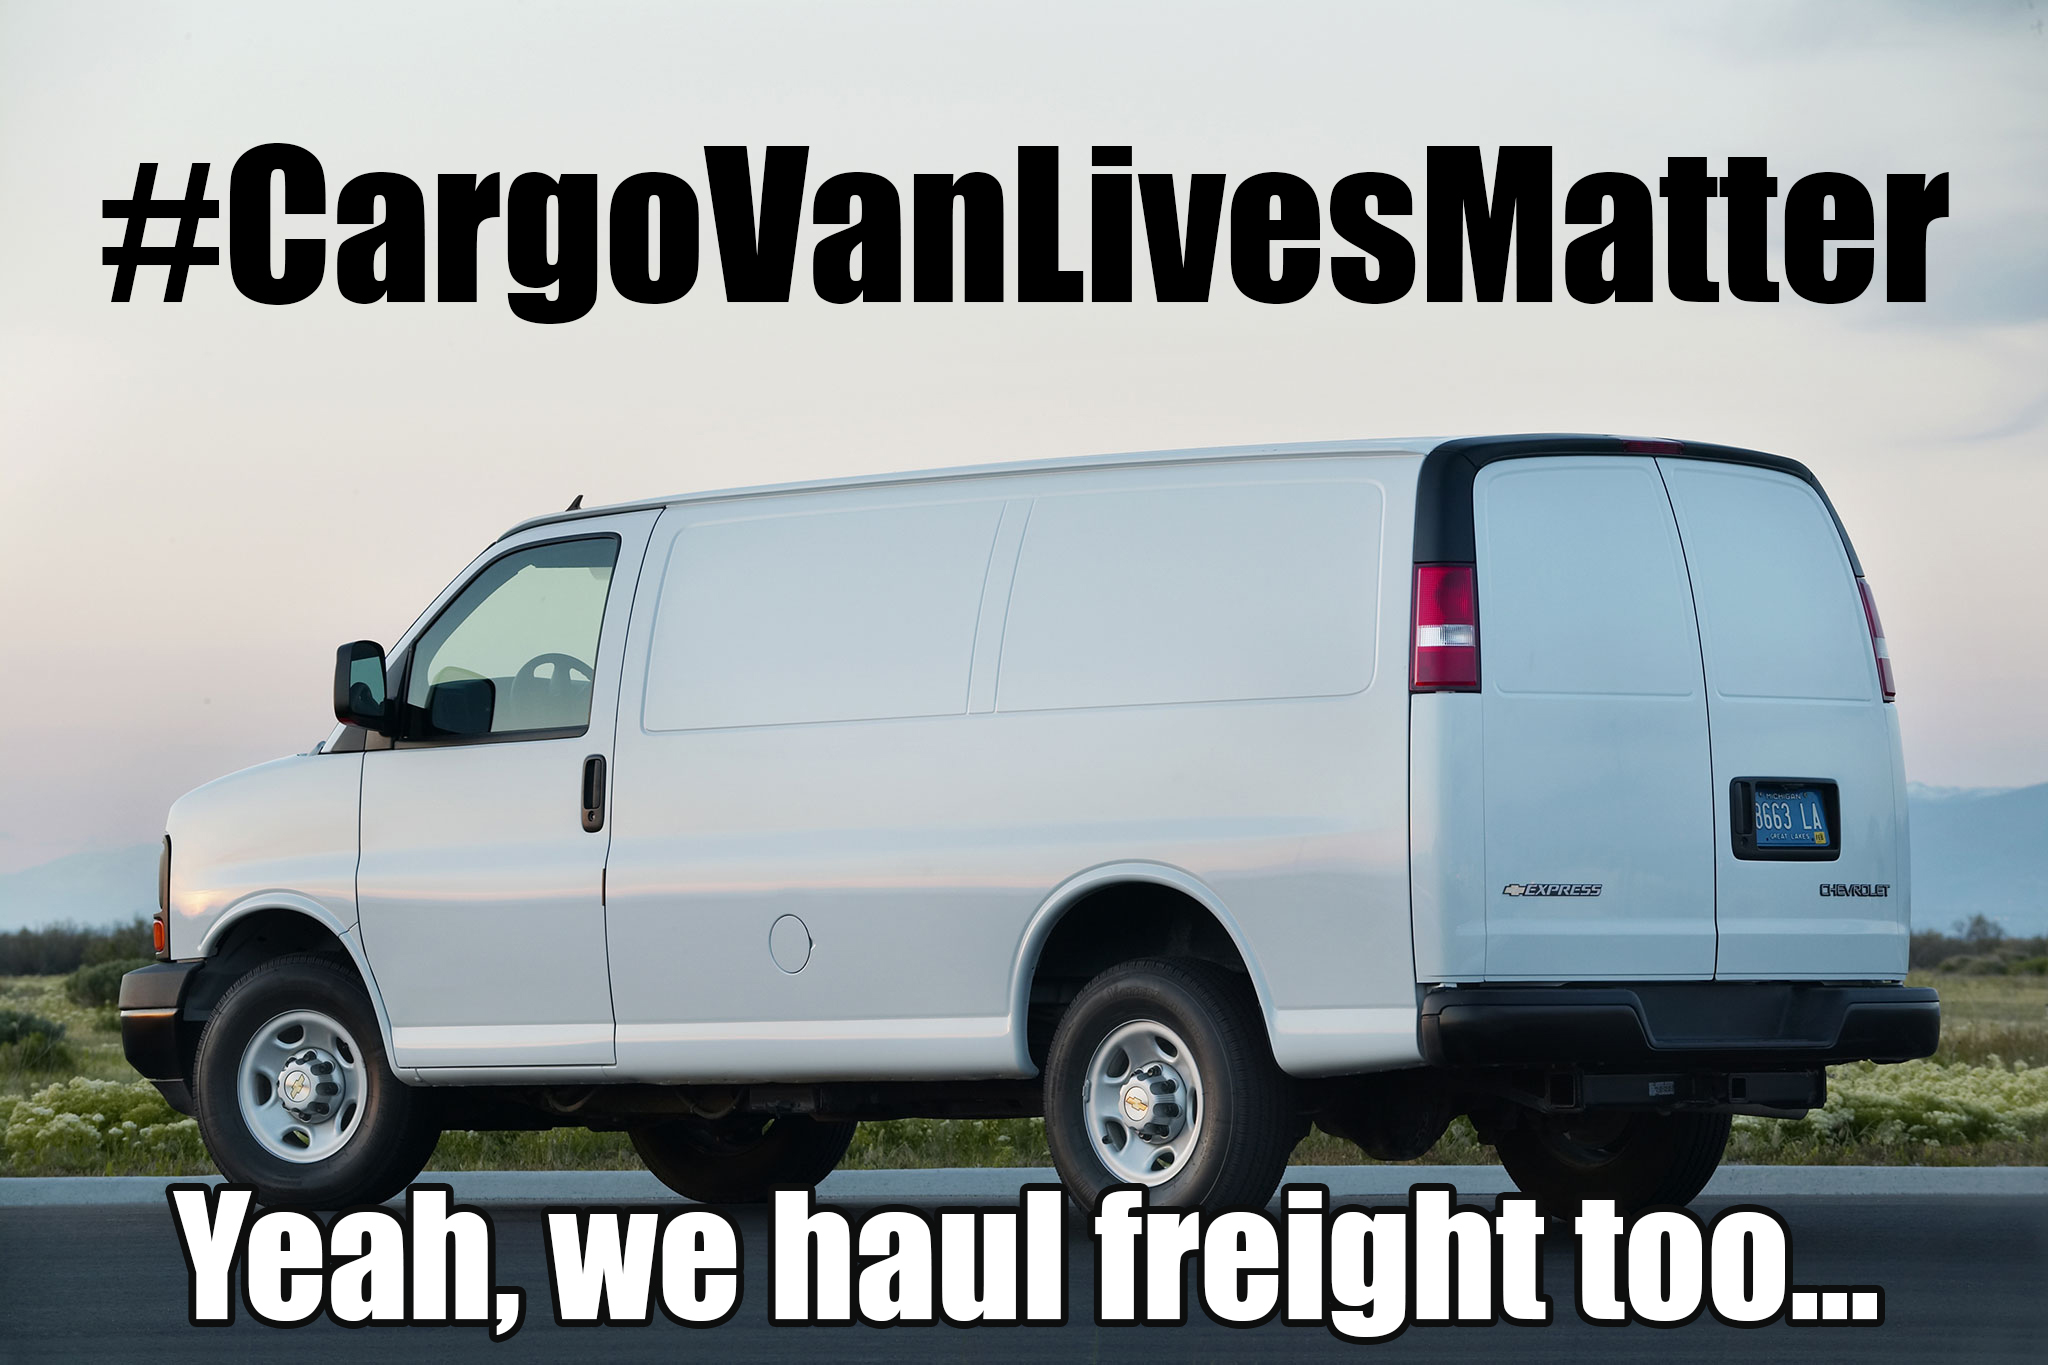 #cargovanlivesmatter